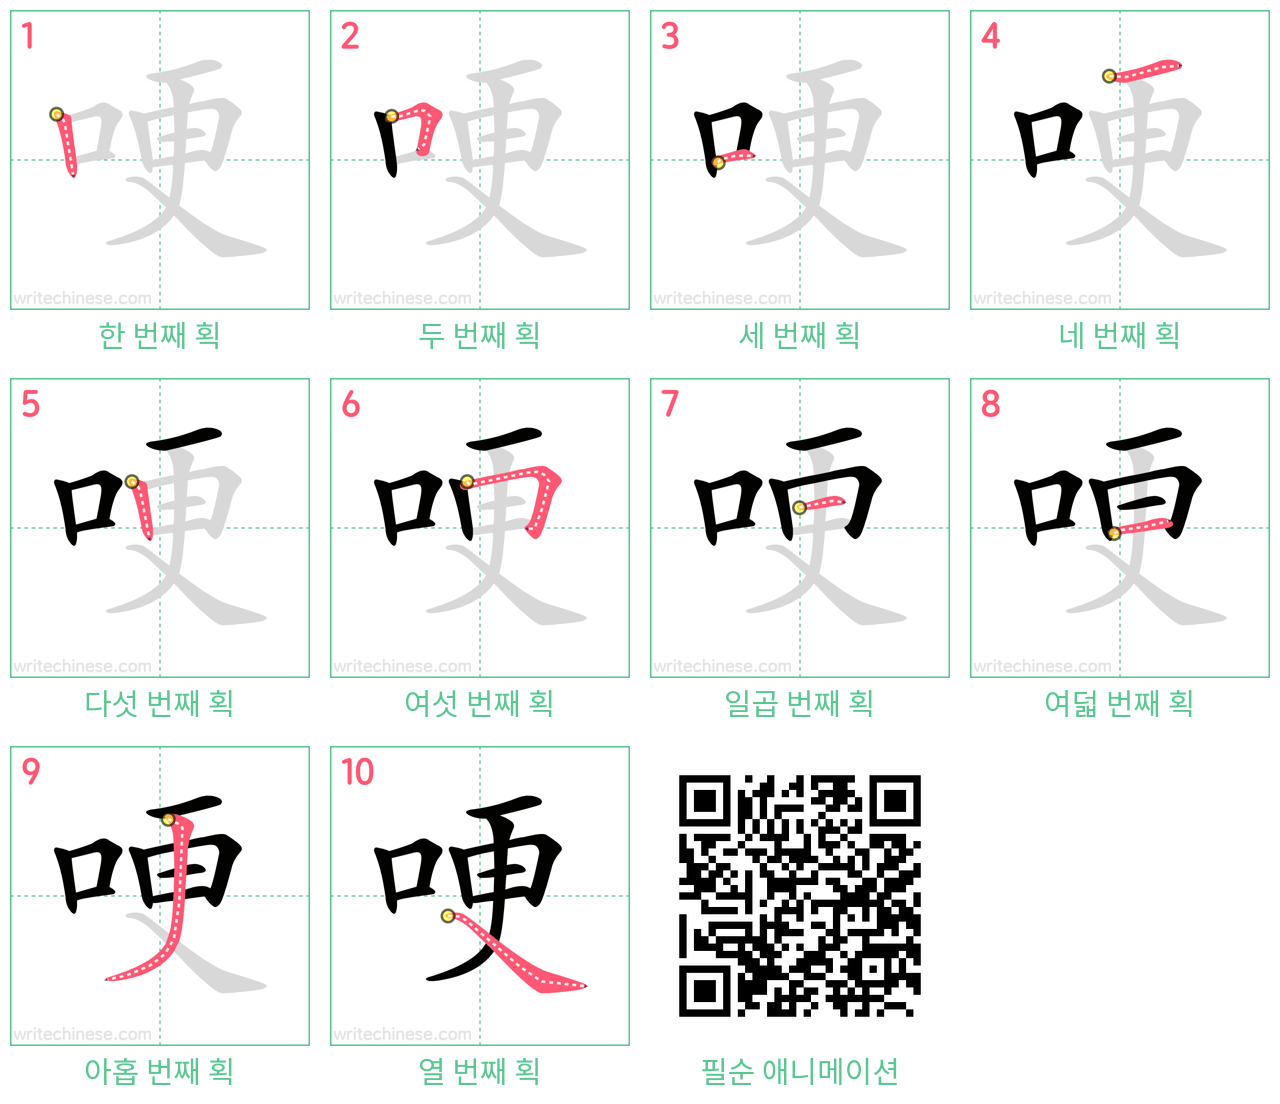 哽 step-by-step stroke order diagrams